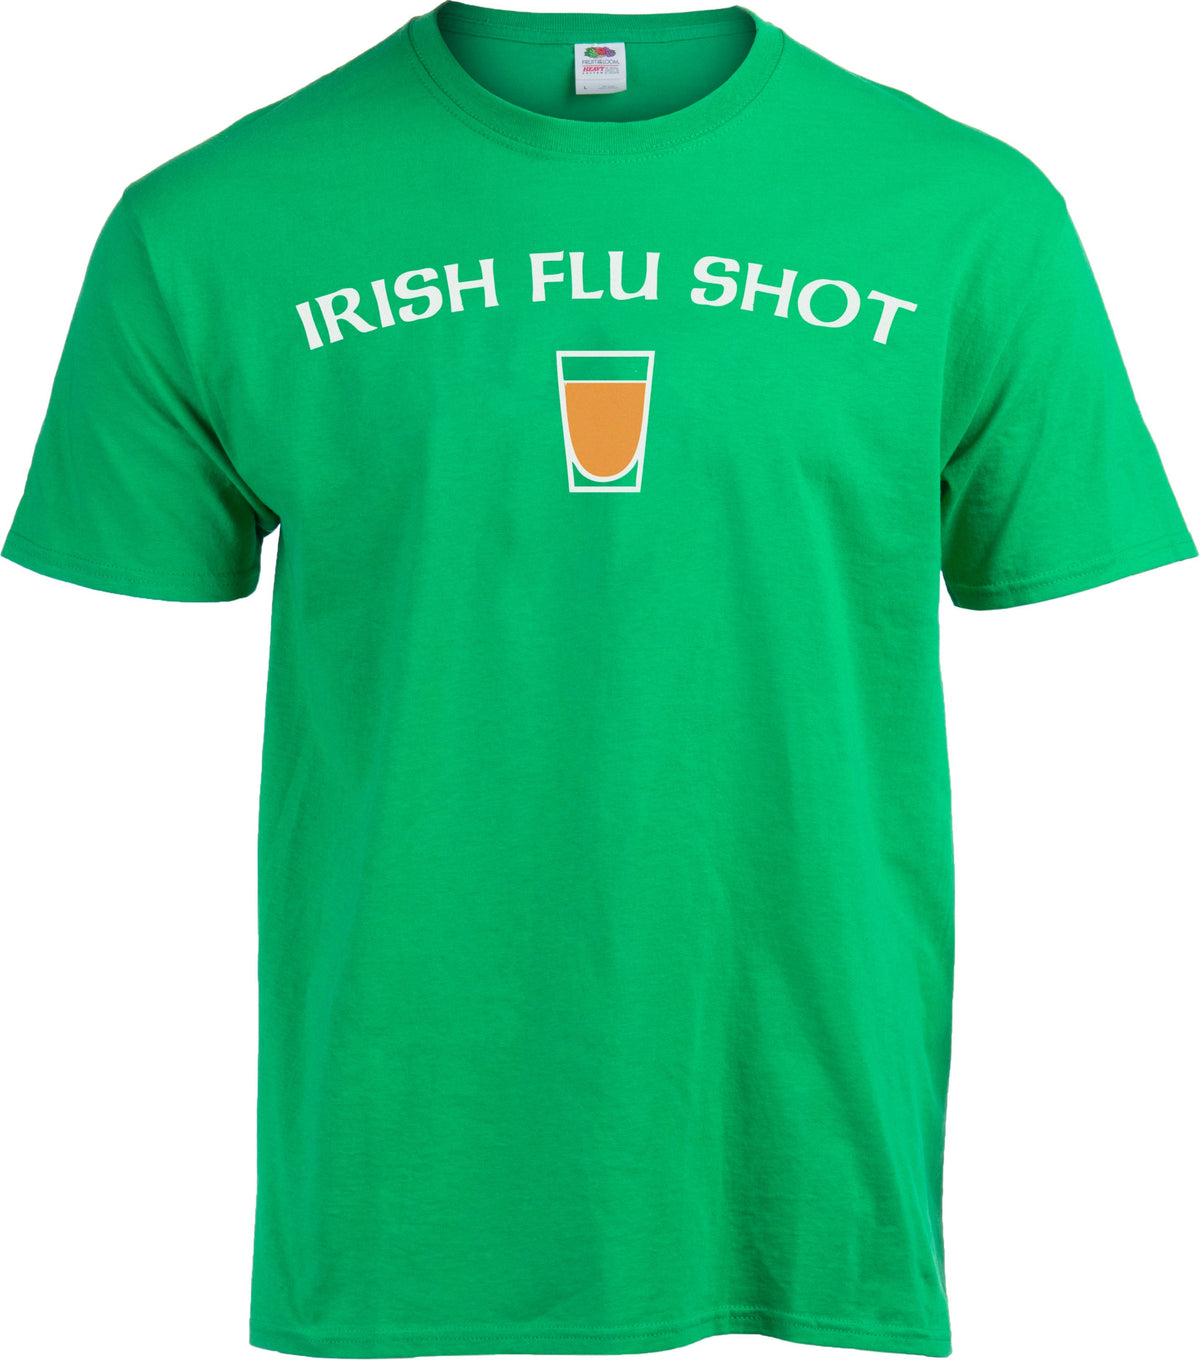 Irish Flu Shot - St. Patrick's Day Irish Pride Whiskey Joke T-shirt - Women's